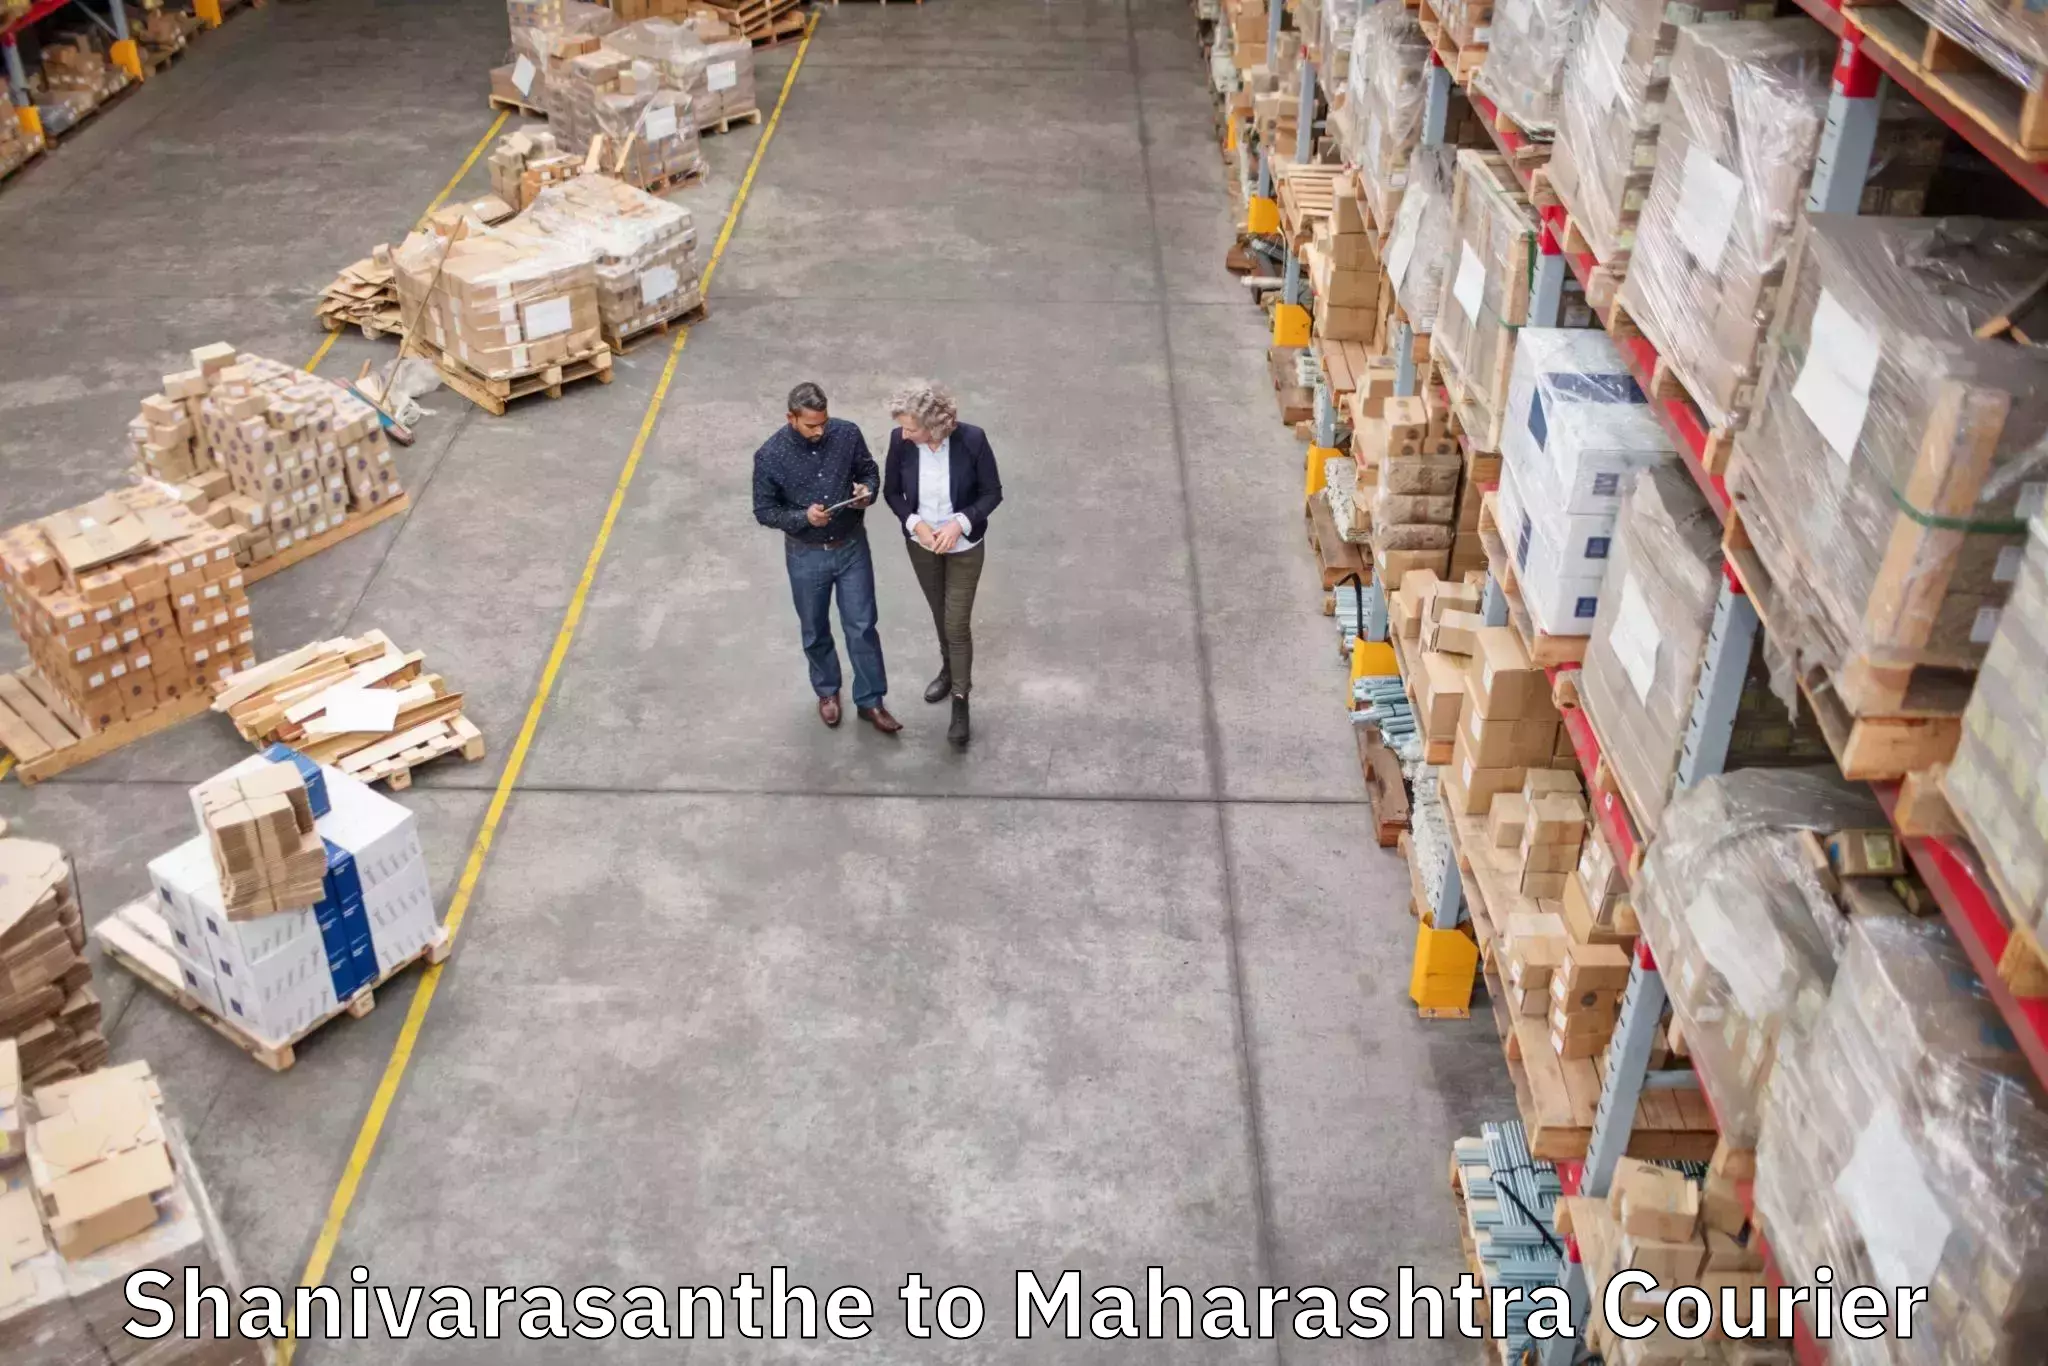 Luggage delivery app Shanivarasanthe to Maharashtra